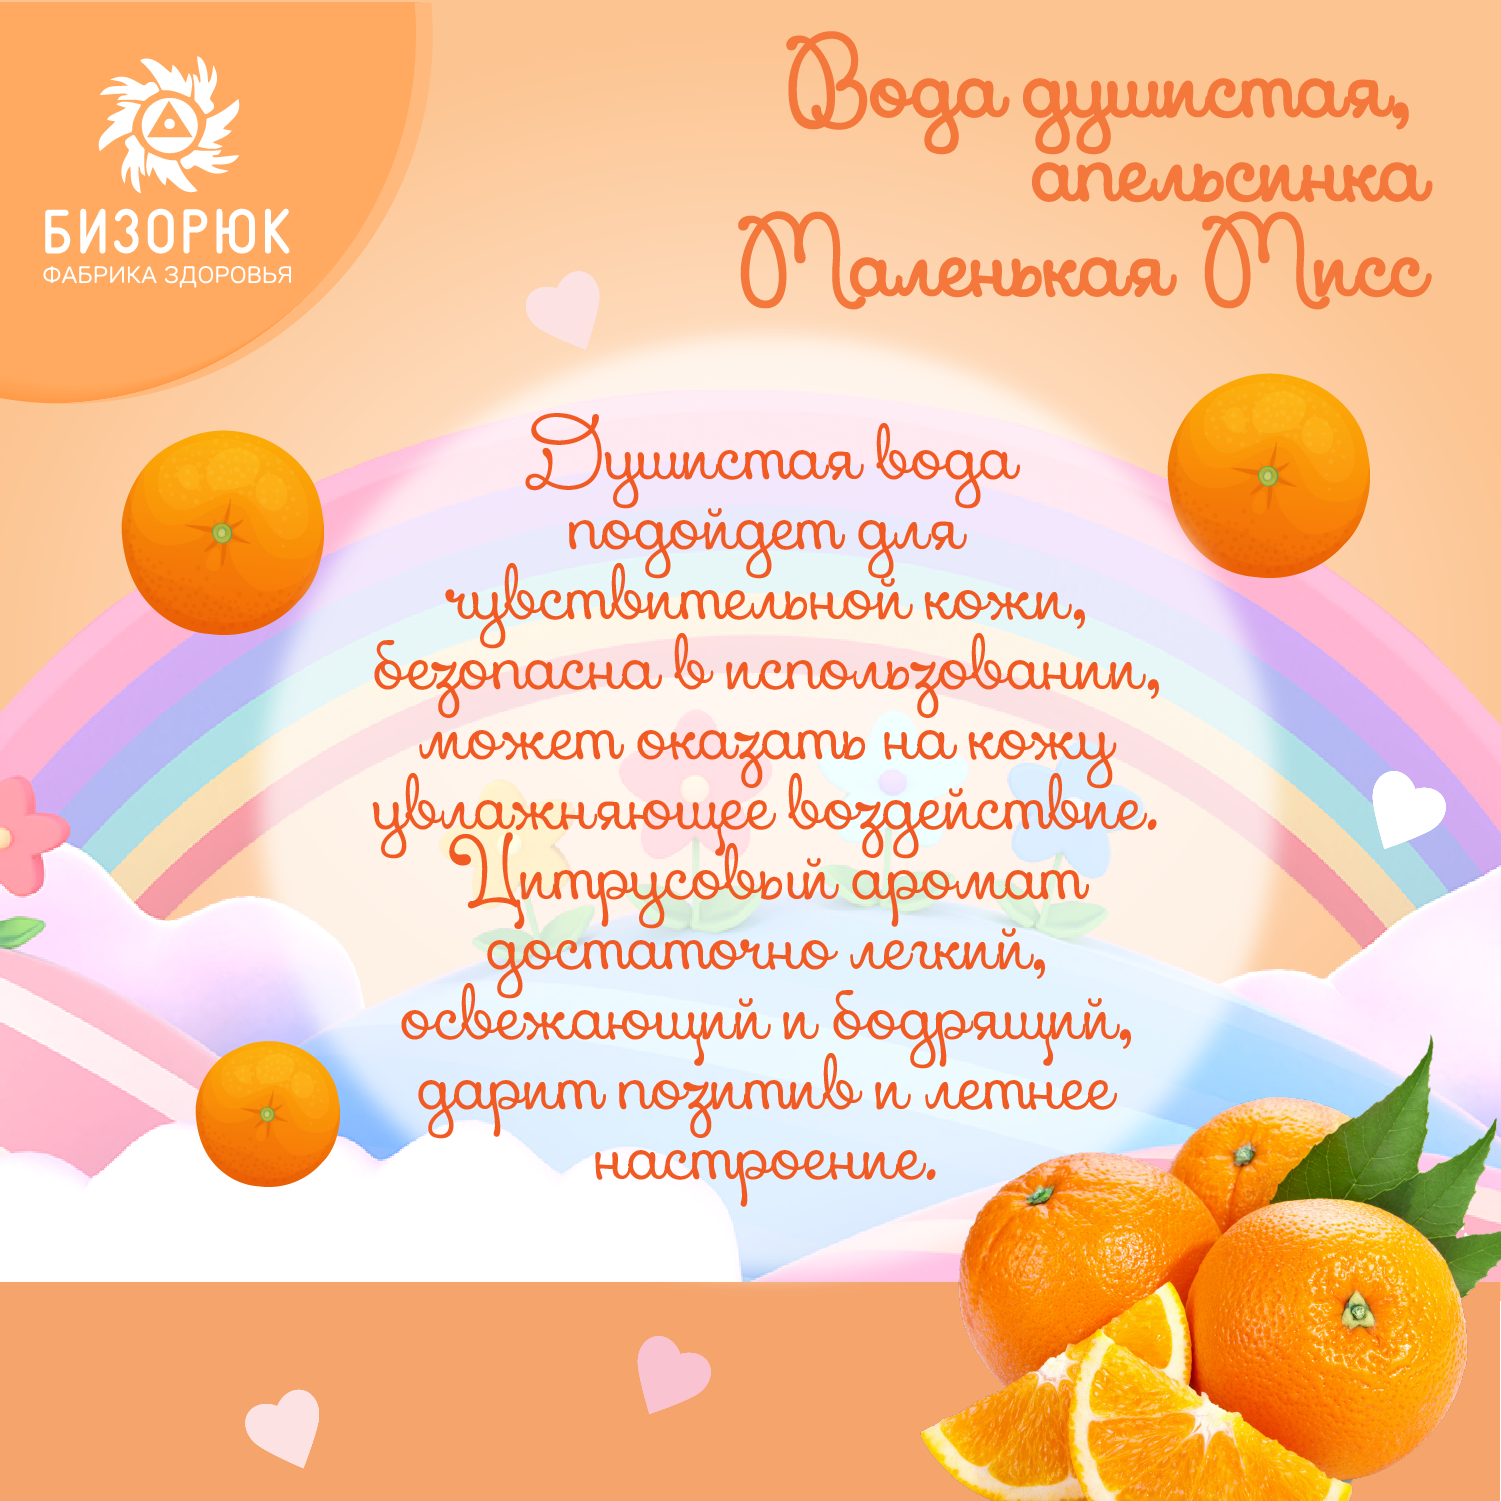 Вода душистая Бизорюк апельсин Маленькая Мисс 50мл - фото 4